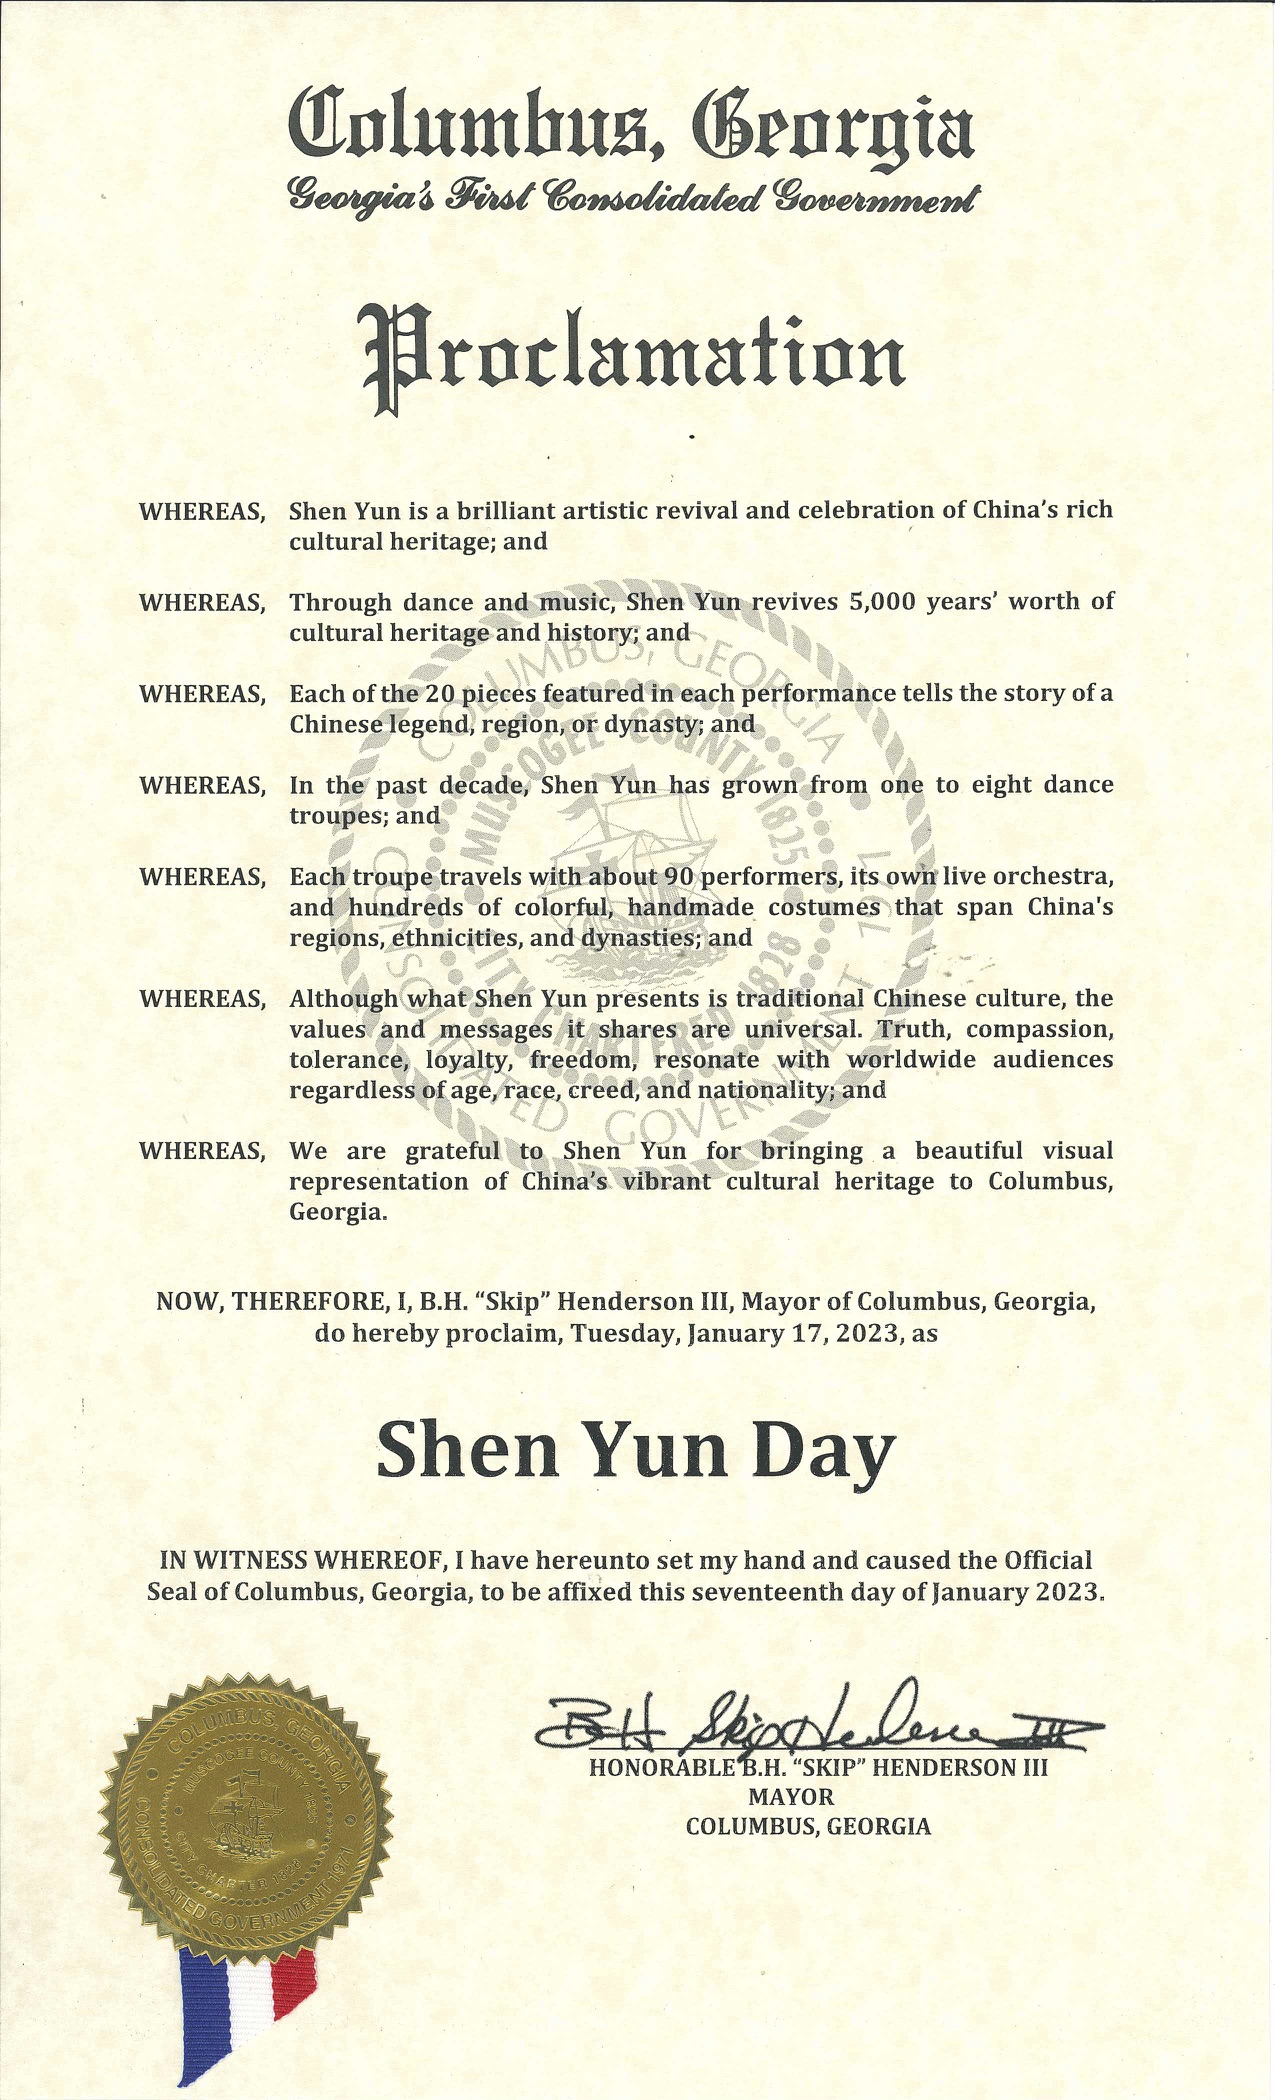 圖7：喬治亞州哥倫布市長亨德森（B.H. Henderson）頒發給神韻的褒獎，將神韻在該市的演出日，二零二三年一月十七日，定為「神韻日」。